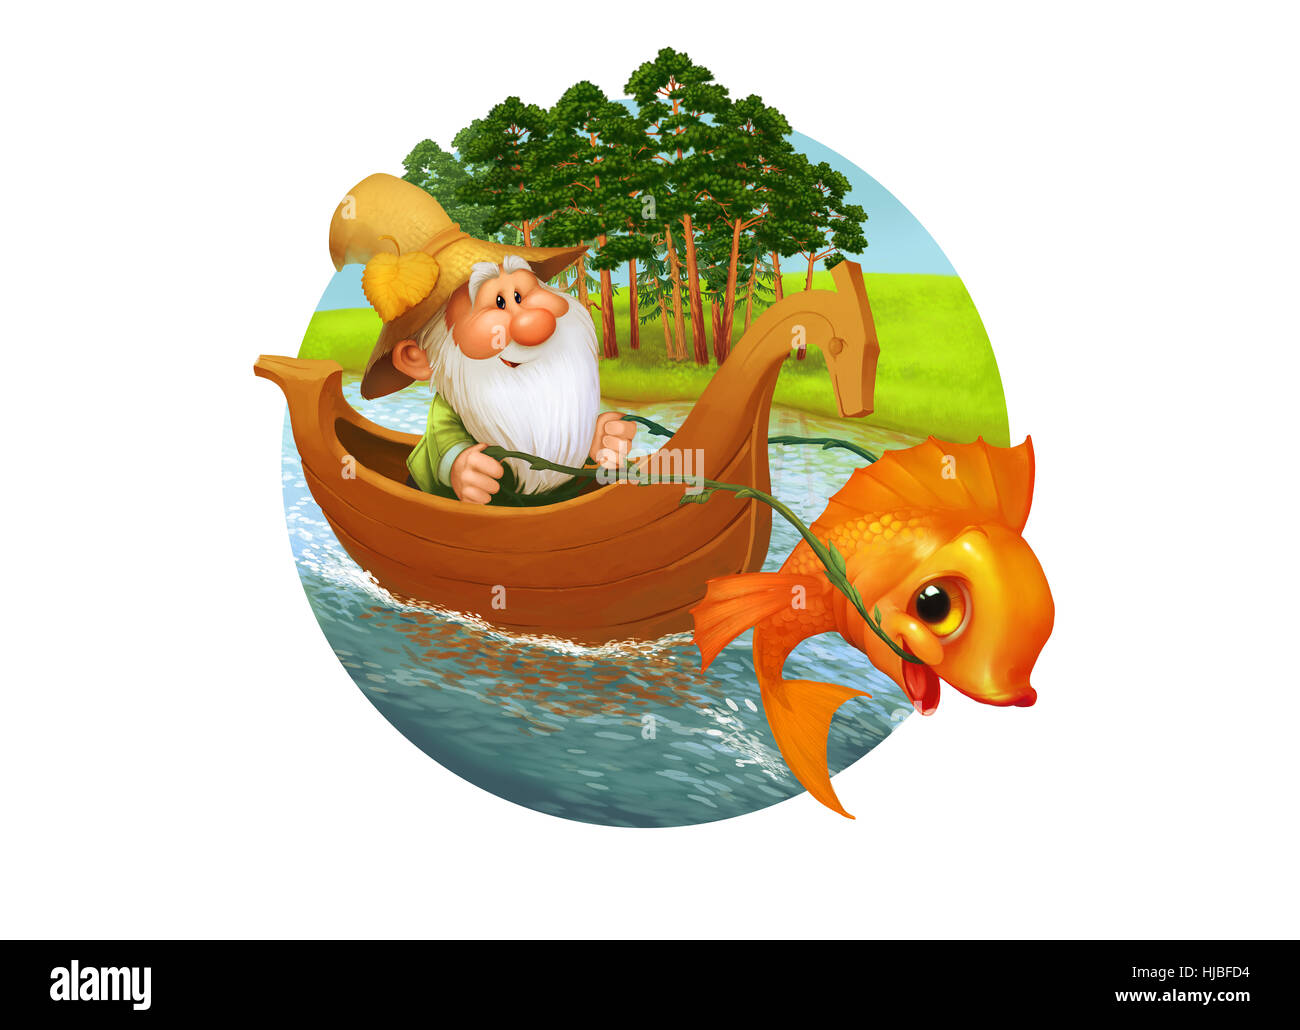 Le caractère de l'ancien pêcheur nage sur le bateau en bois avec drôle poisson rouge, bande dessinée de vulgarisation. Banque D'Images